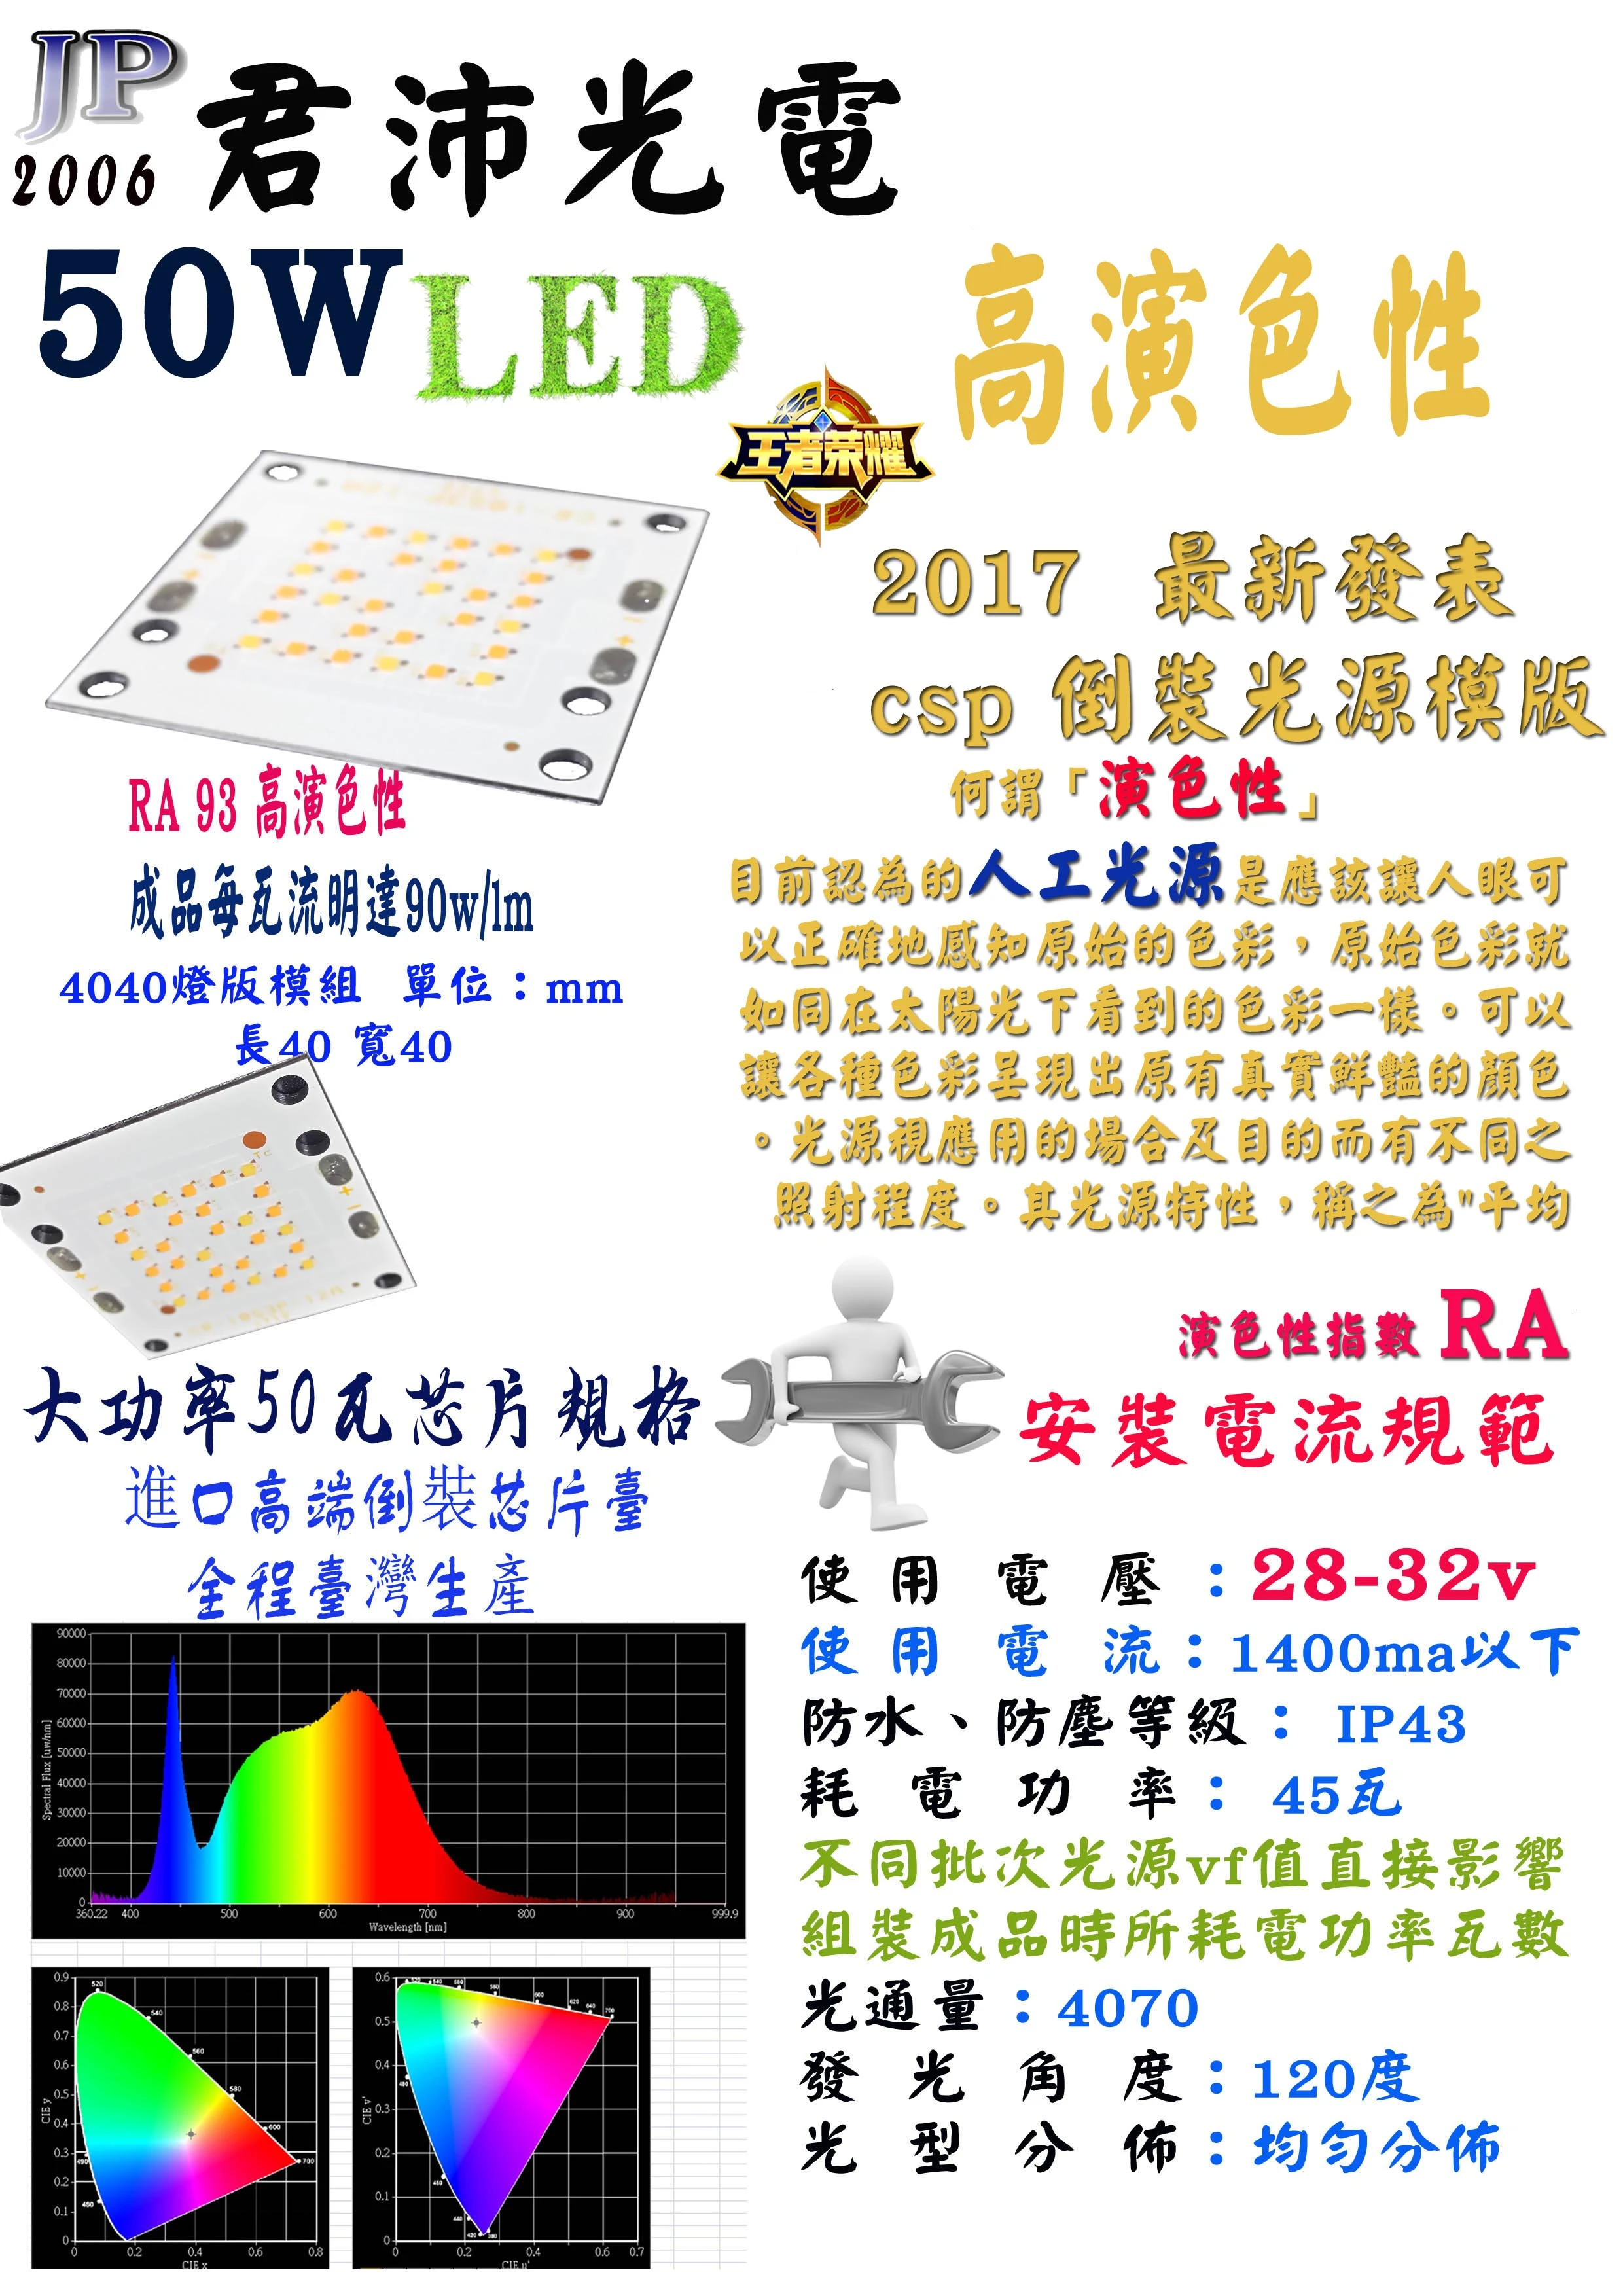 台灣生產 50w 高演色性 led光源模組 獨家開